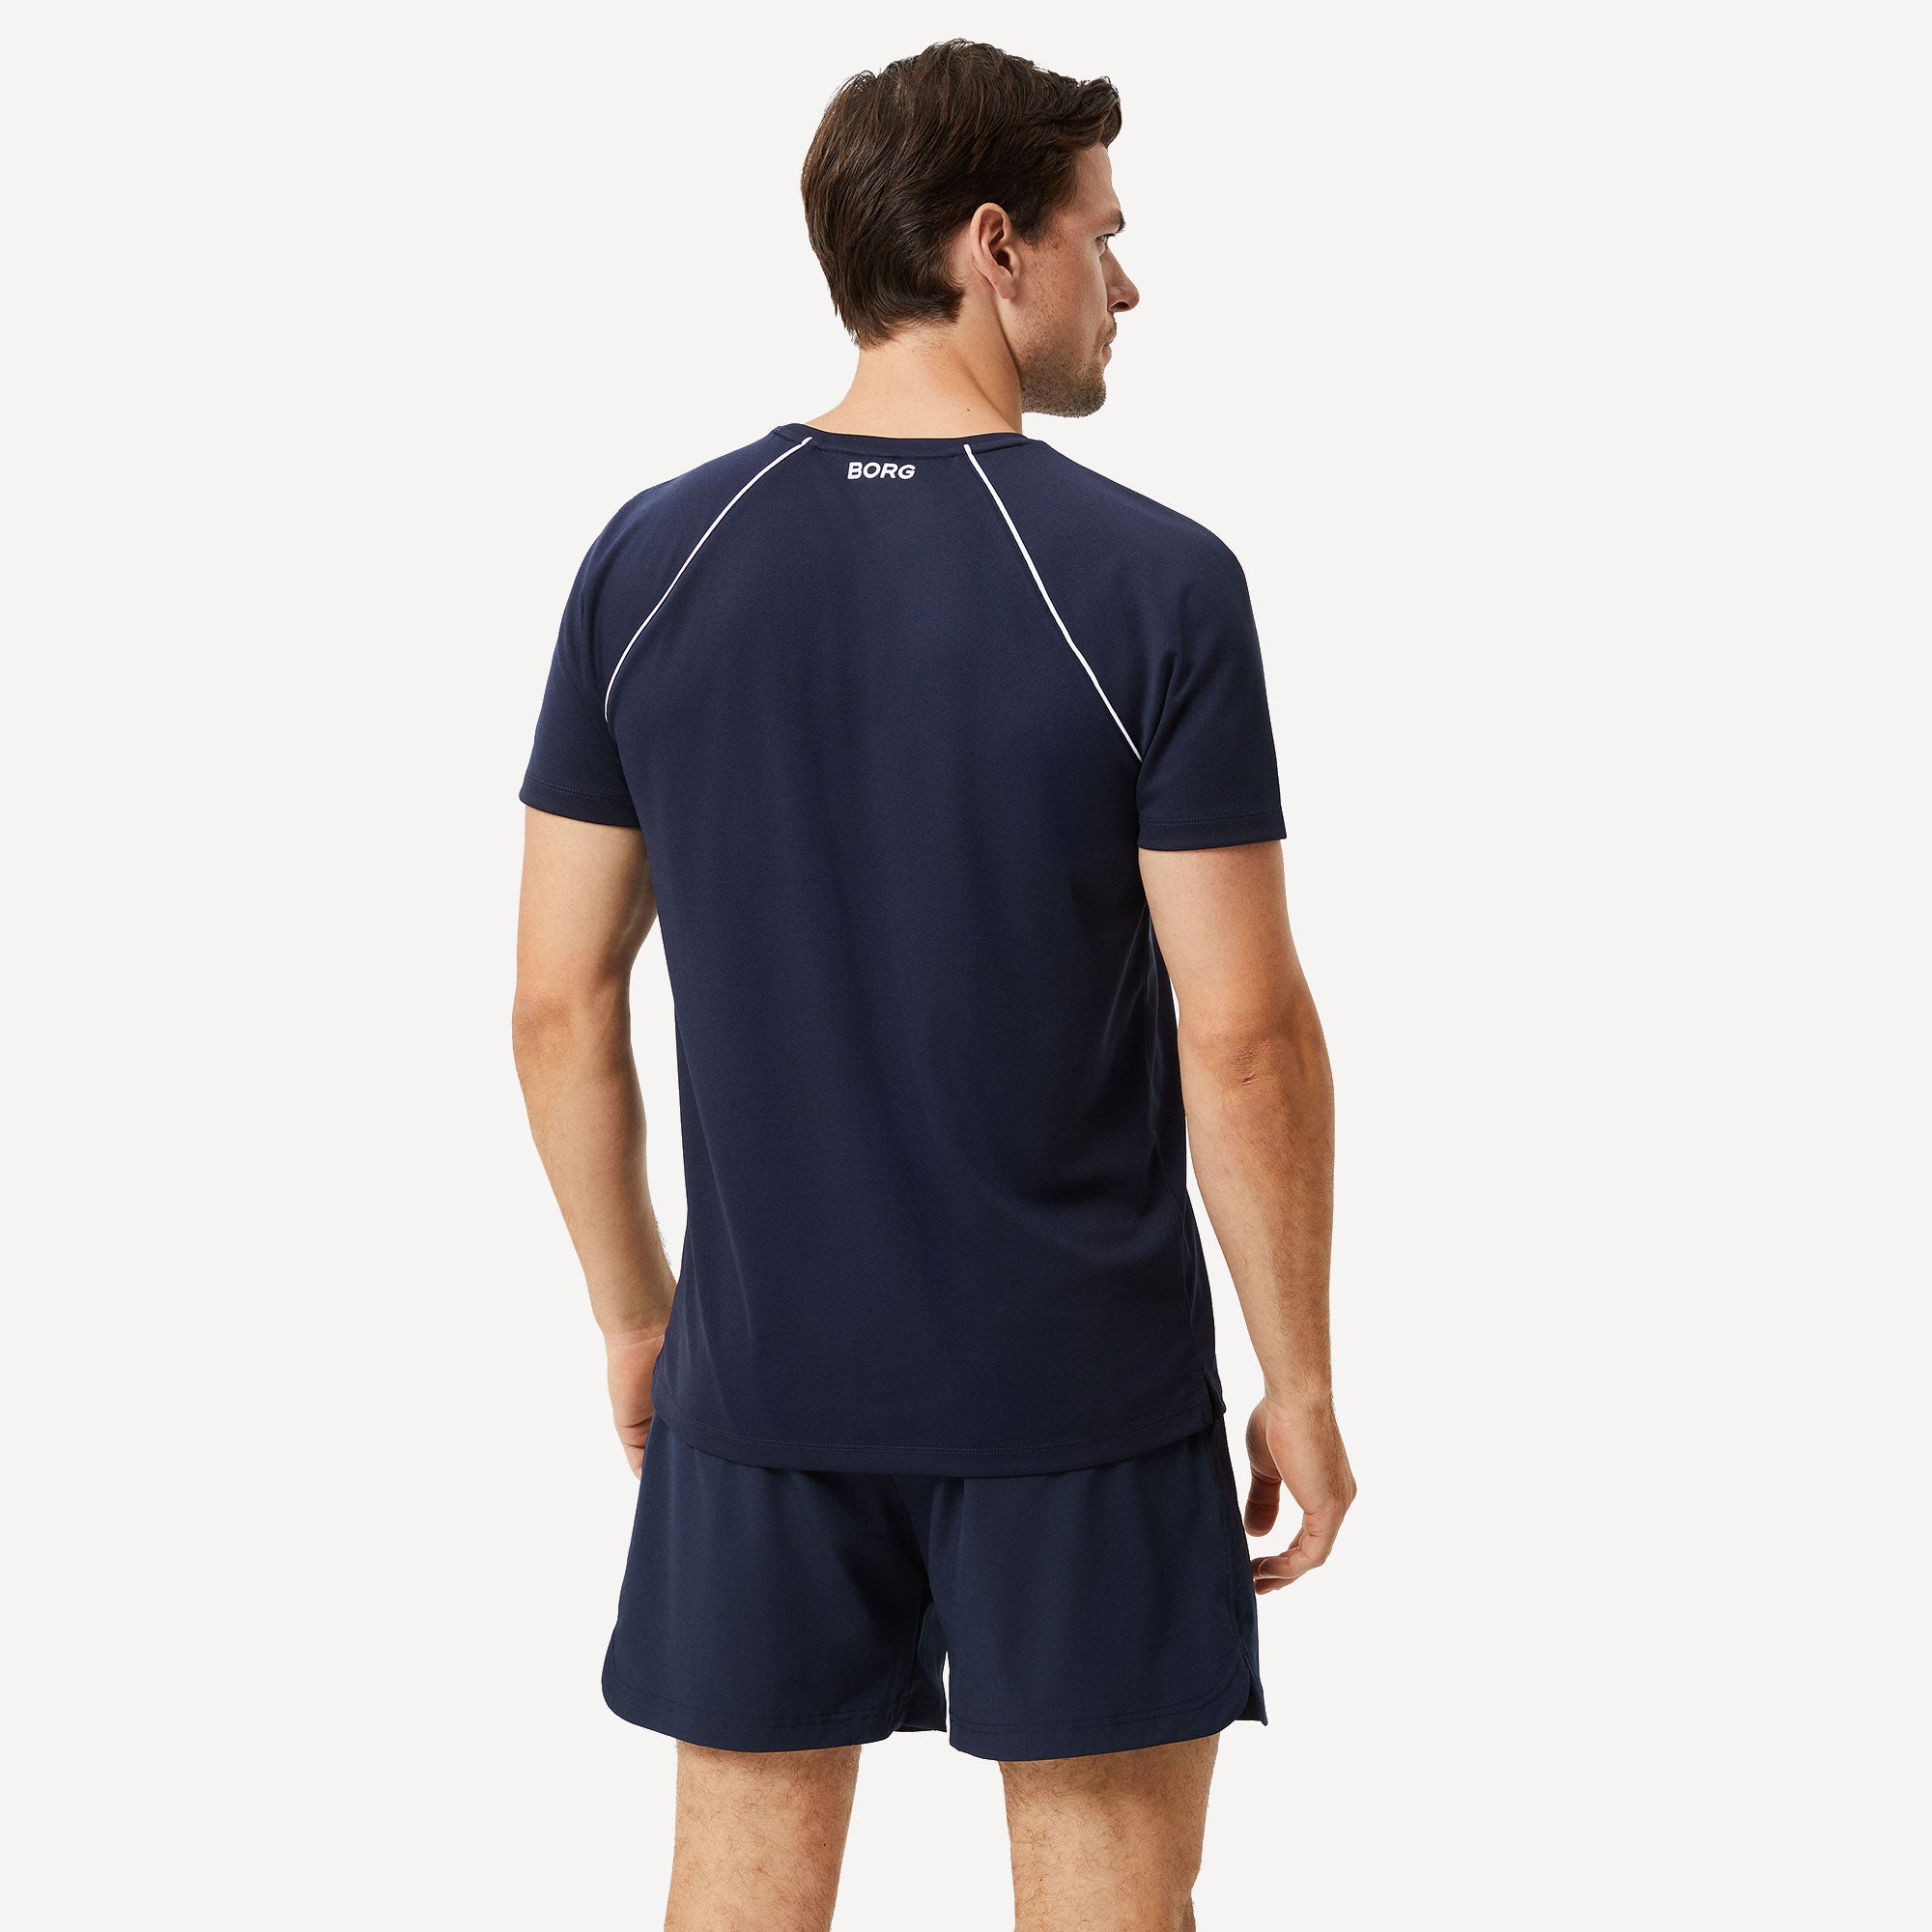 Björn Borg Ace Racquet Men's Tennis Shirt - Dark Blue (2)